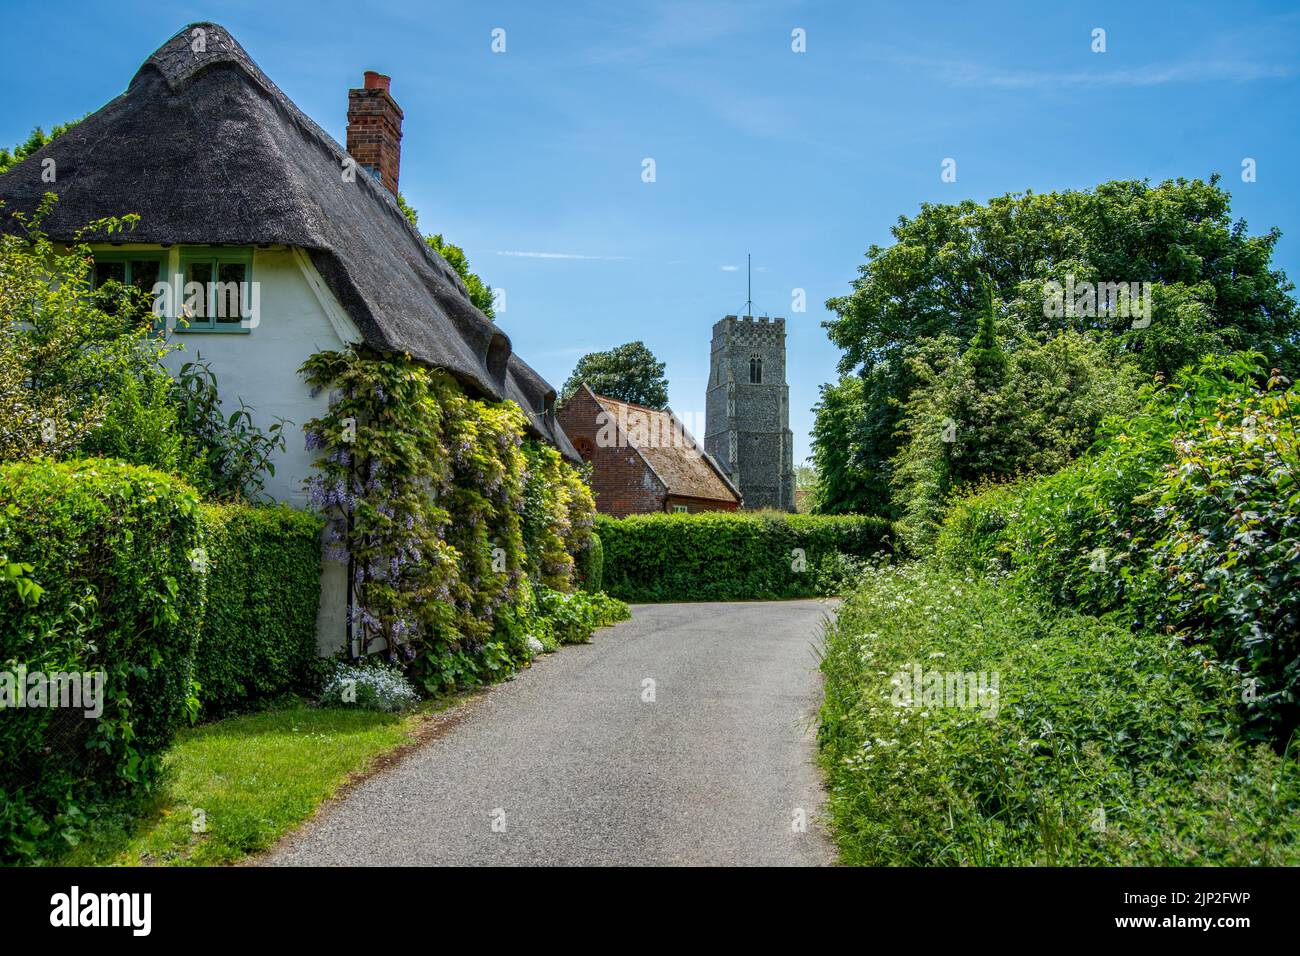 Une scène de village anglais avec un cottage de chaume et l'église du village Banque D'Images